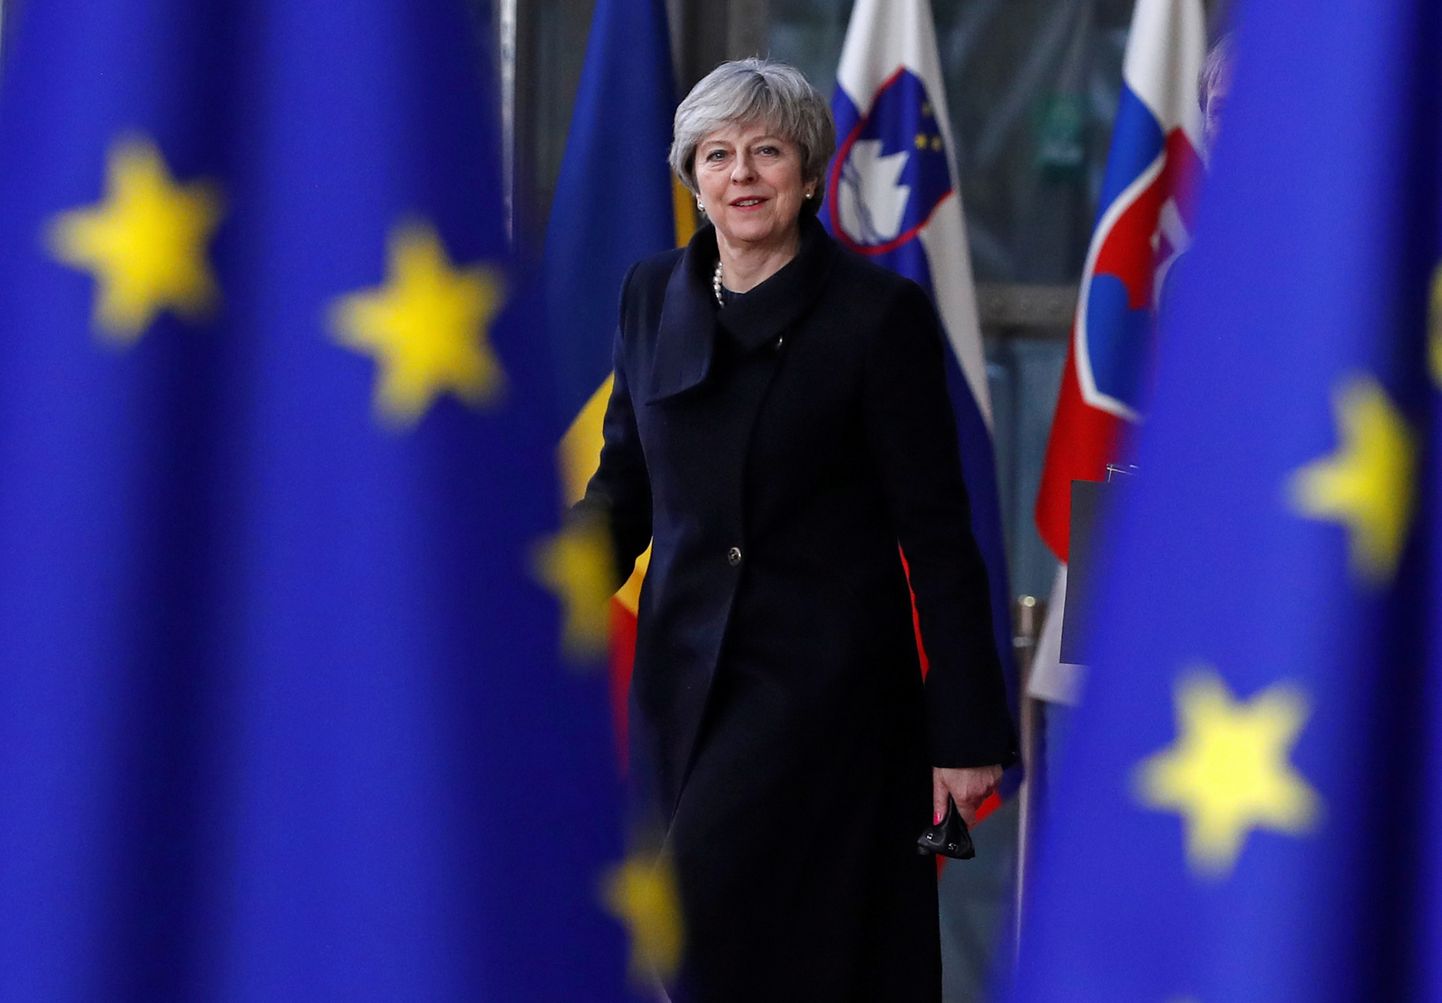 Briti peaminister Theresa May saabus vaatamata päev varem kodumaa parlamendis saadud kaotusele eile Brüsselisse ülemkogule vapral ilmel.